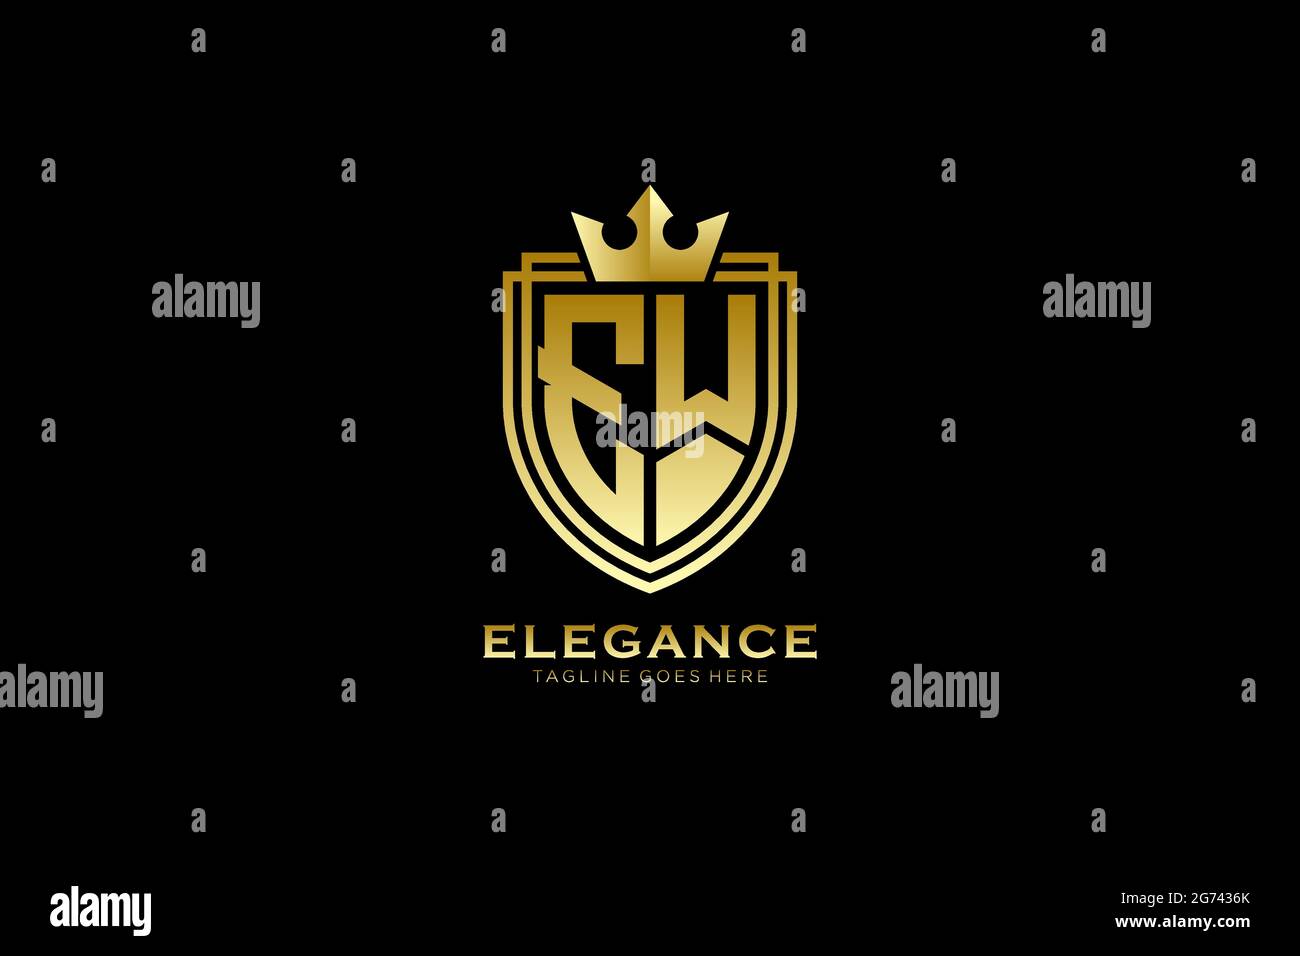 EW Elegantes Luxus-Monogramm-Logo oder Badge-Vorlage mit Rollen und königlicher Krone - perfekt für luxuriöse Branding-Projekte Stock Vektor